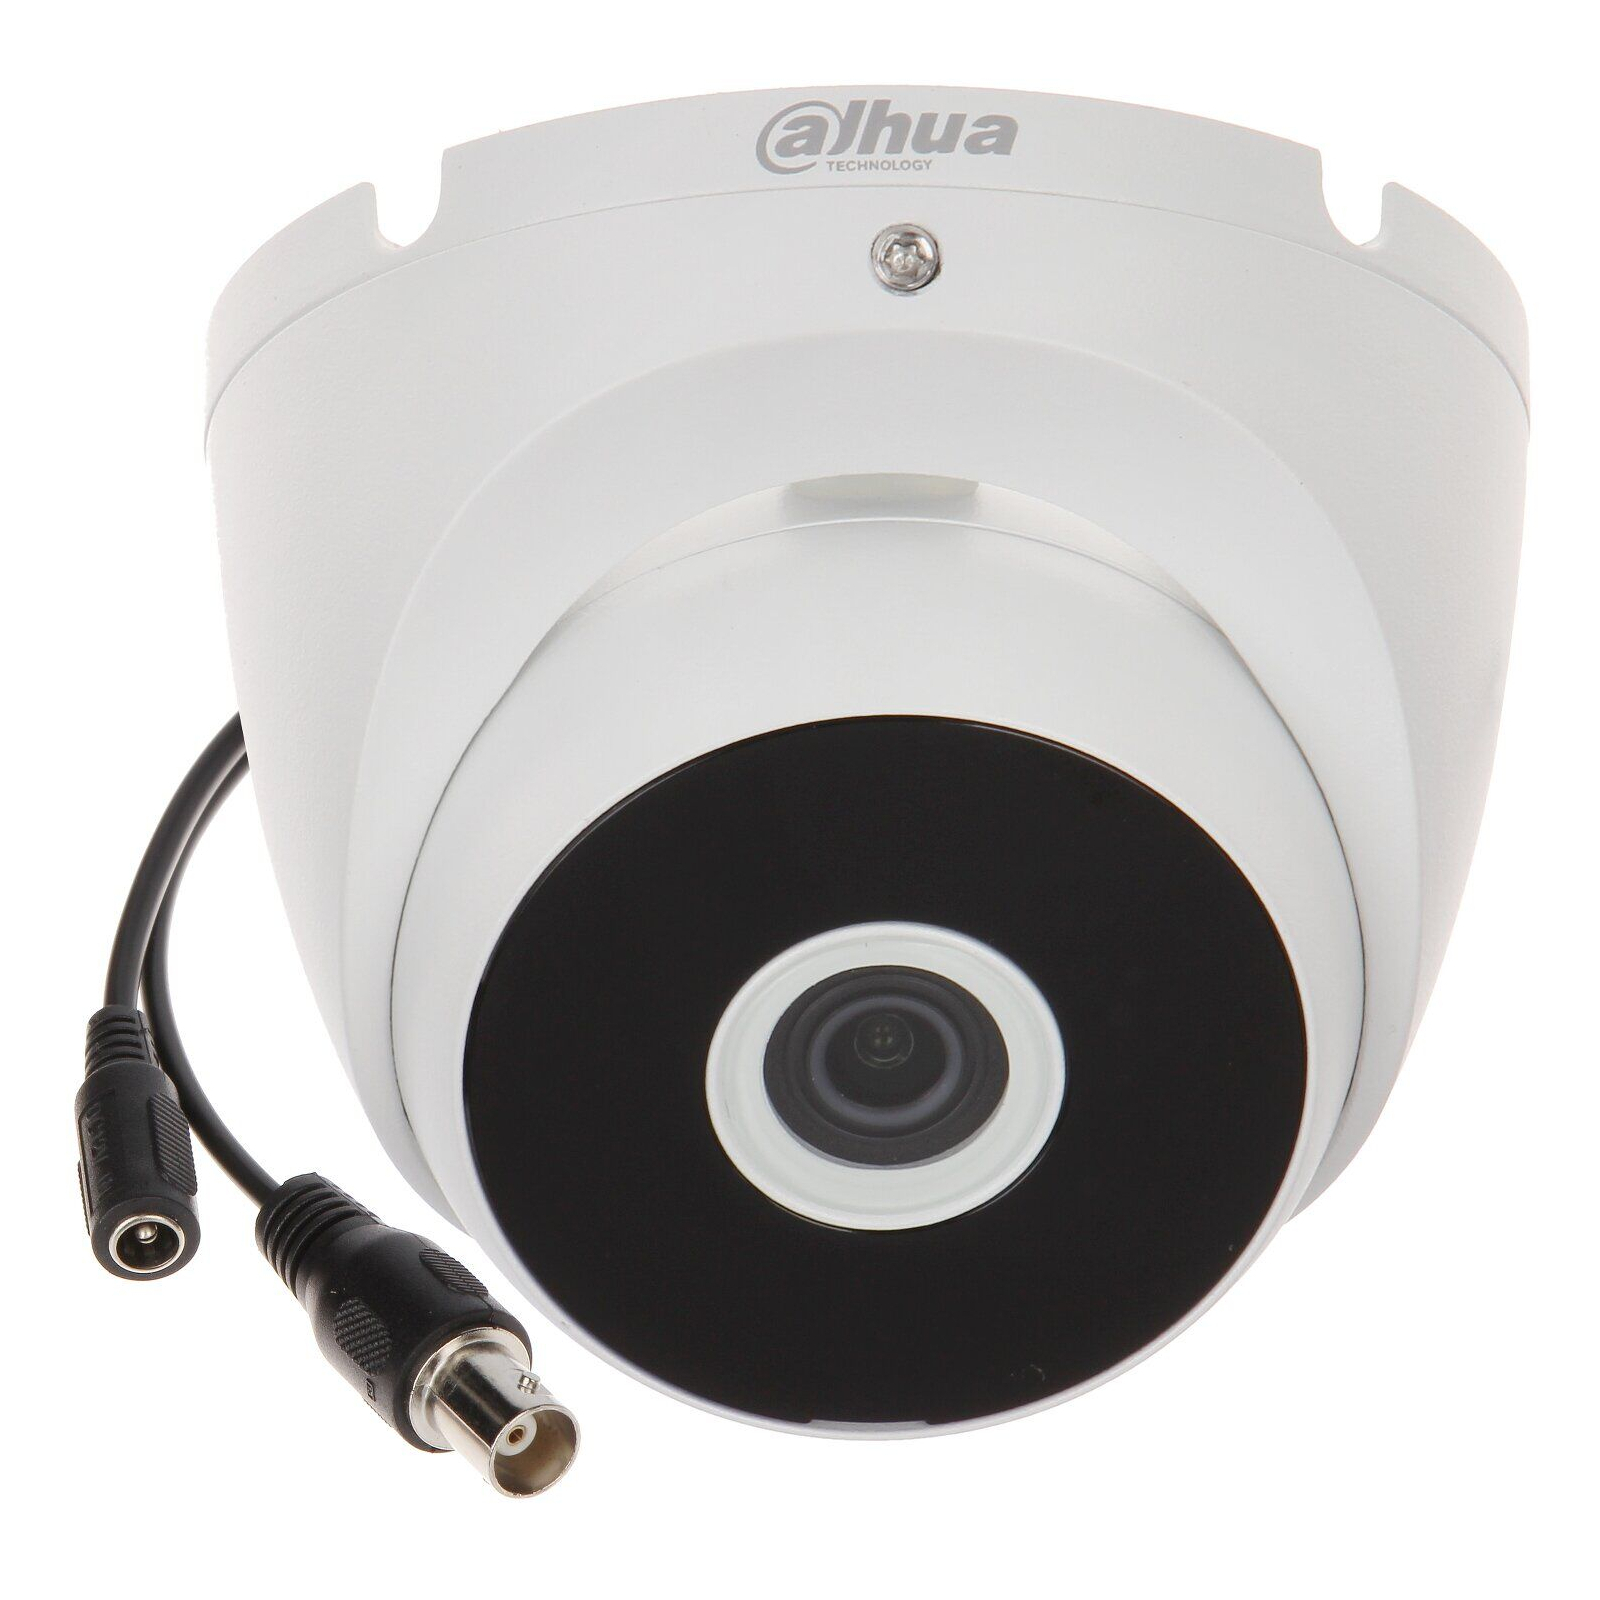 Камера видеонаблюдения Dahua DH-HAC-T2A11P (2.8) (DH-HAC-T2A11P) изображение 2